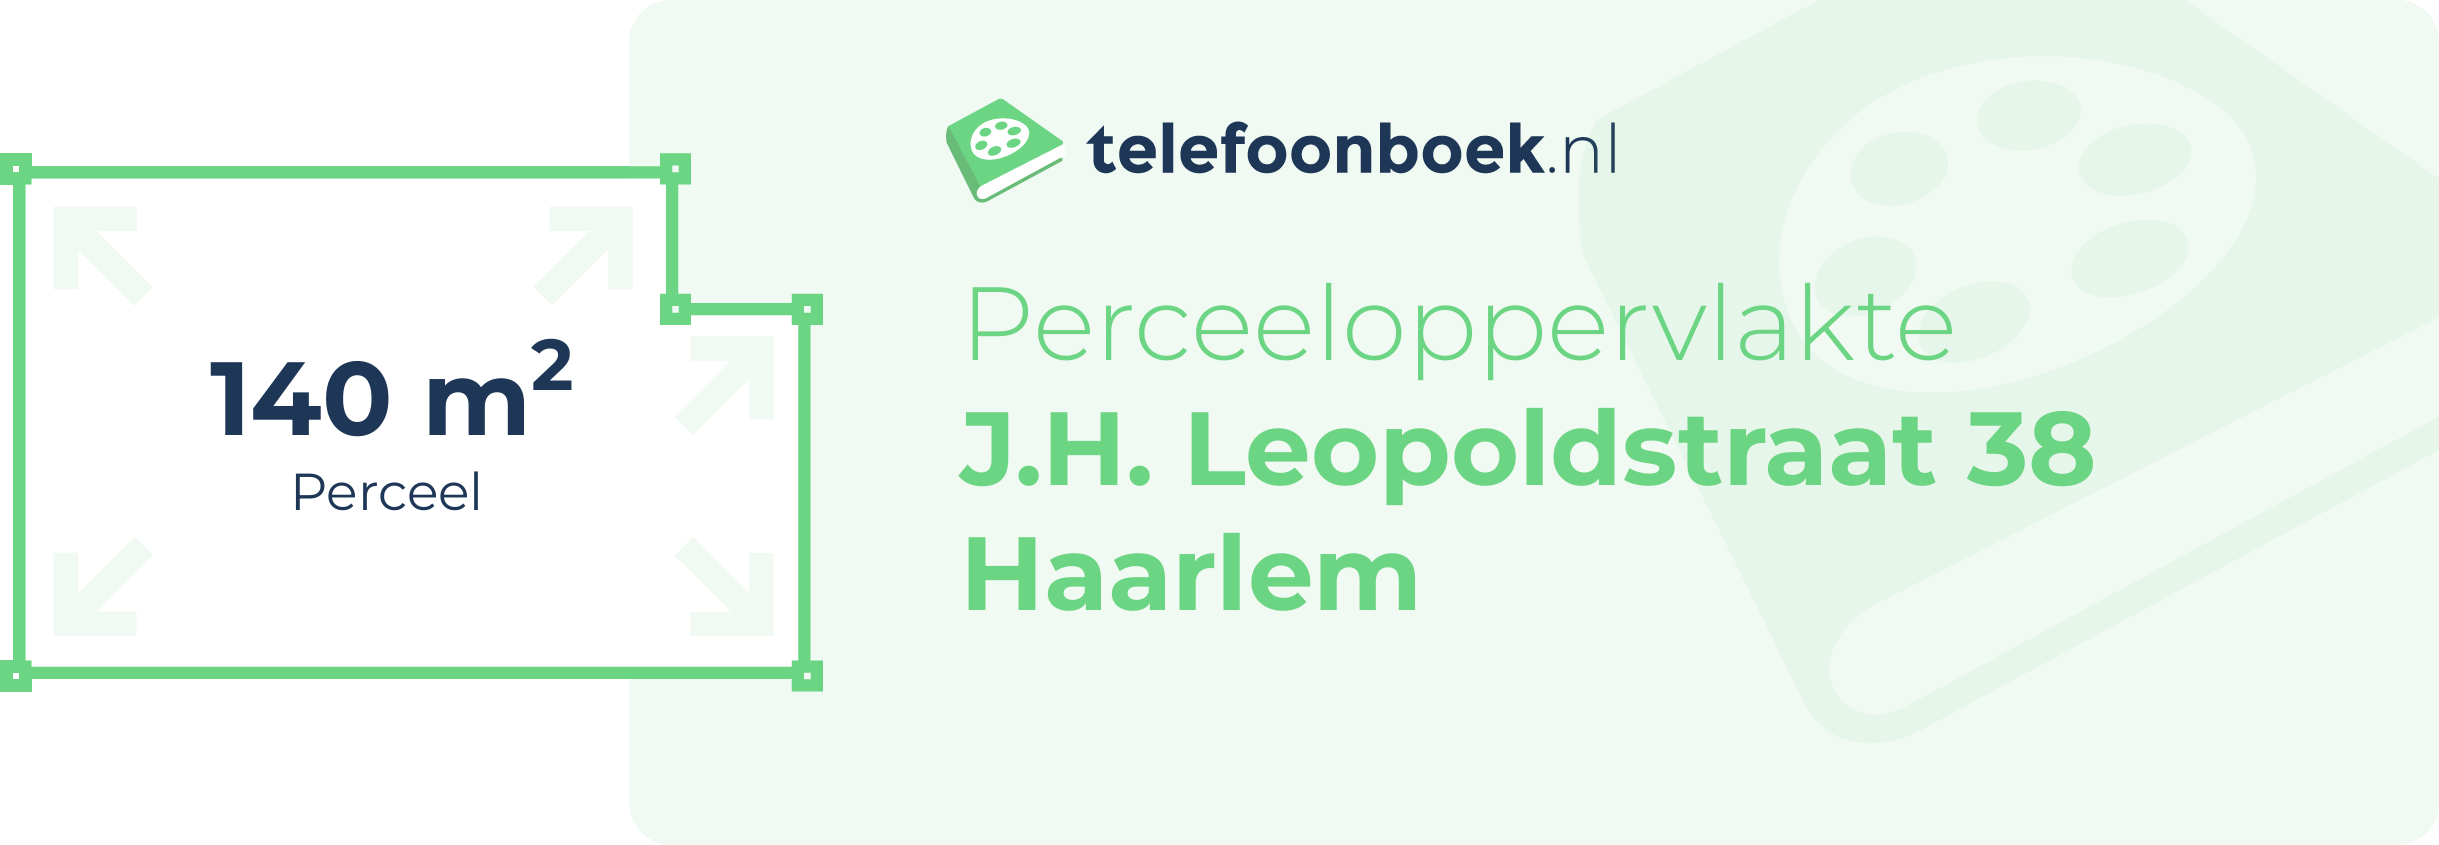 Perceeloppervlakte J.H. Leopoldstraat 38 Haarlem